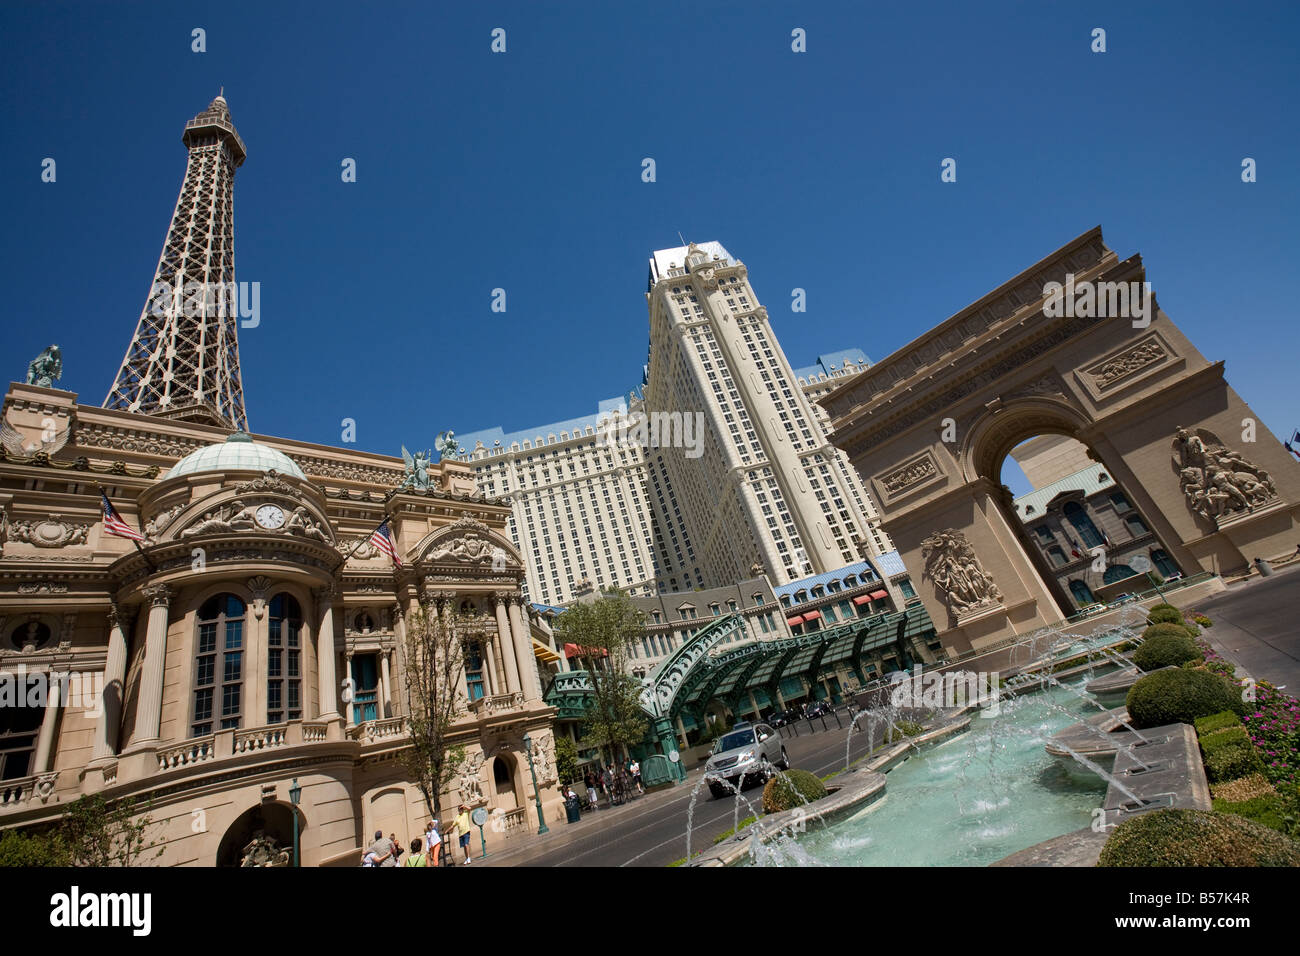 Paris Hotel and Casino, Las Vegas, Nevada, USA Stock Photo